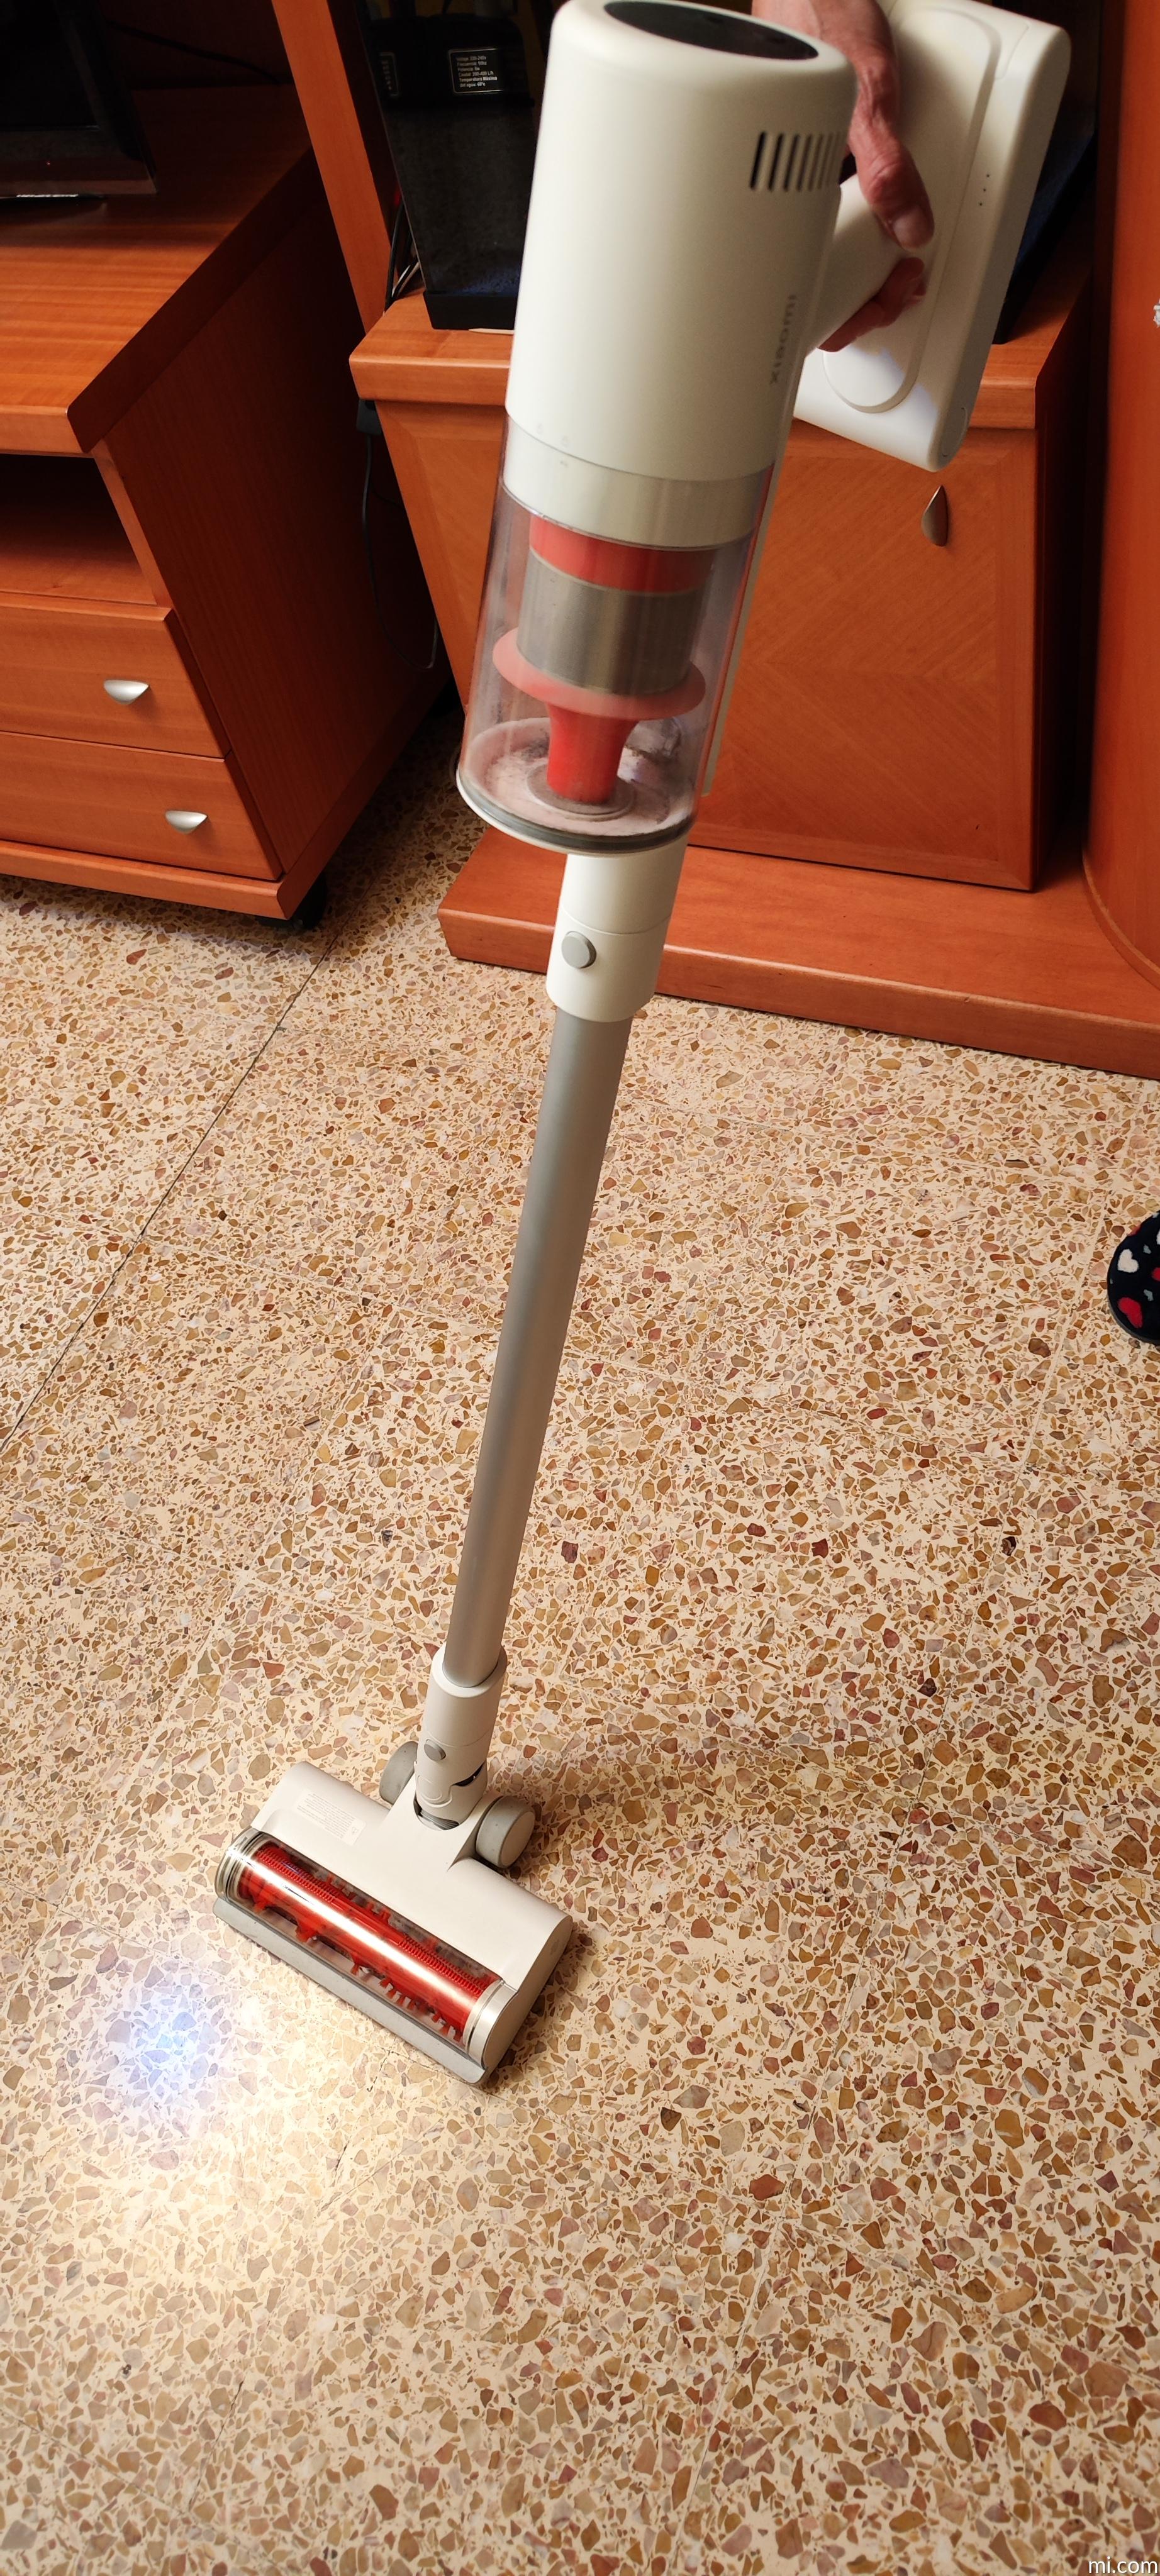 Mi Vacuum Cleaner G11